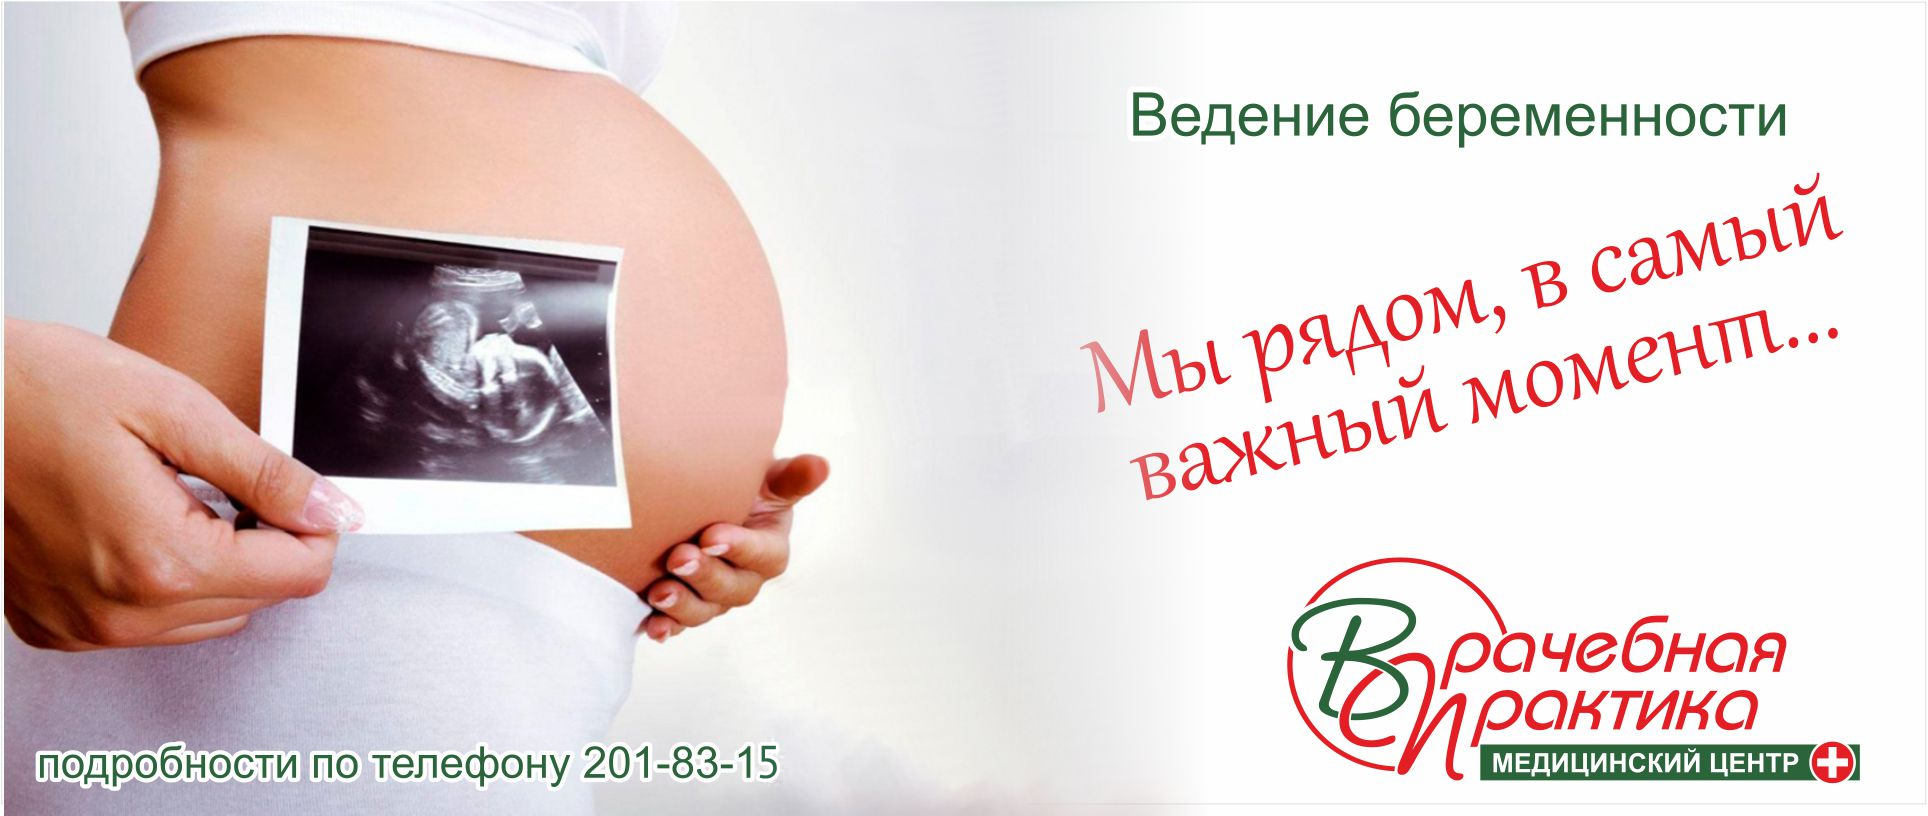 Ведение беременности самара. Ведение беременности. Ведение беременности реклама. УЗИ по беременности реклама.